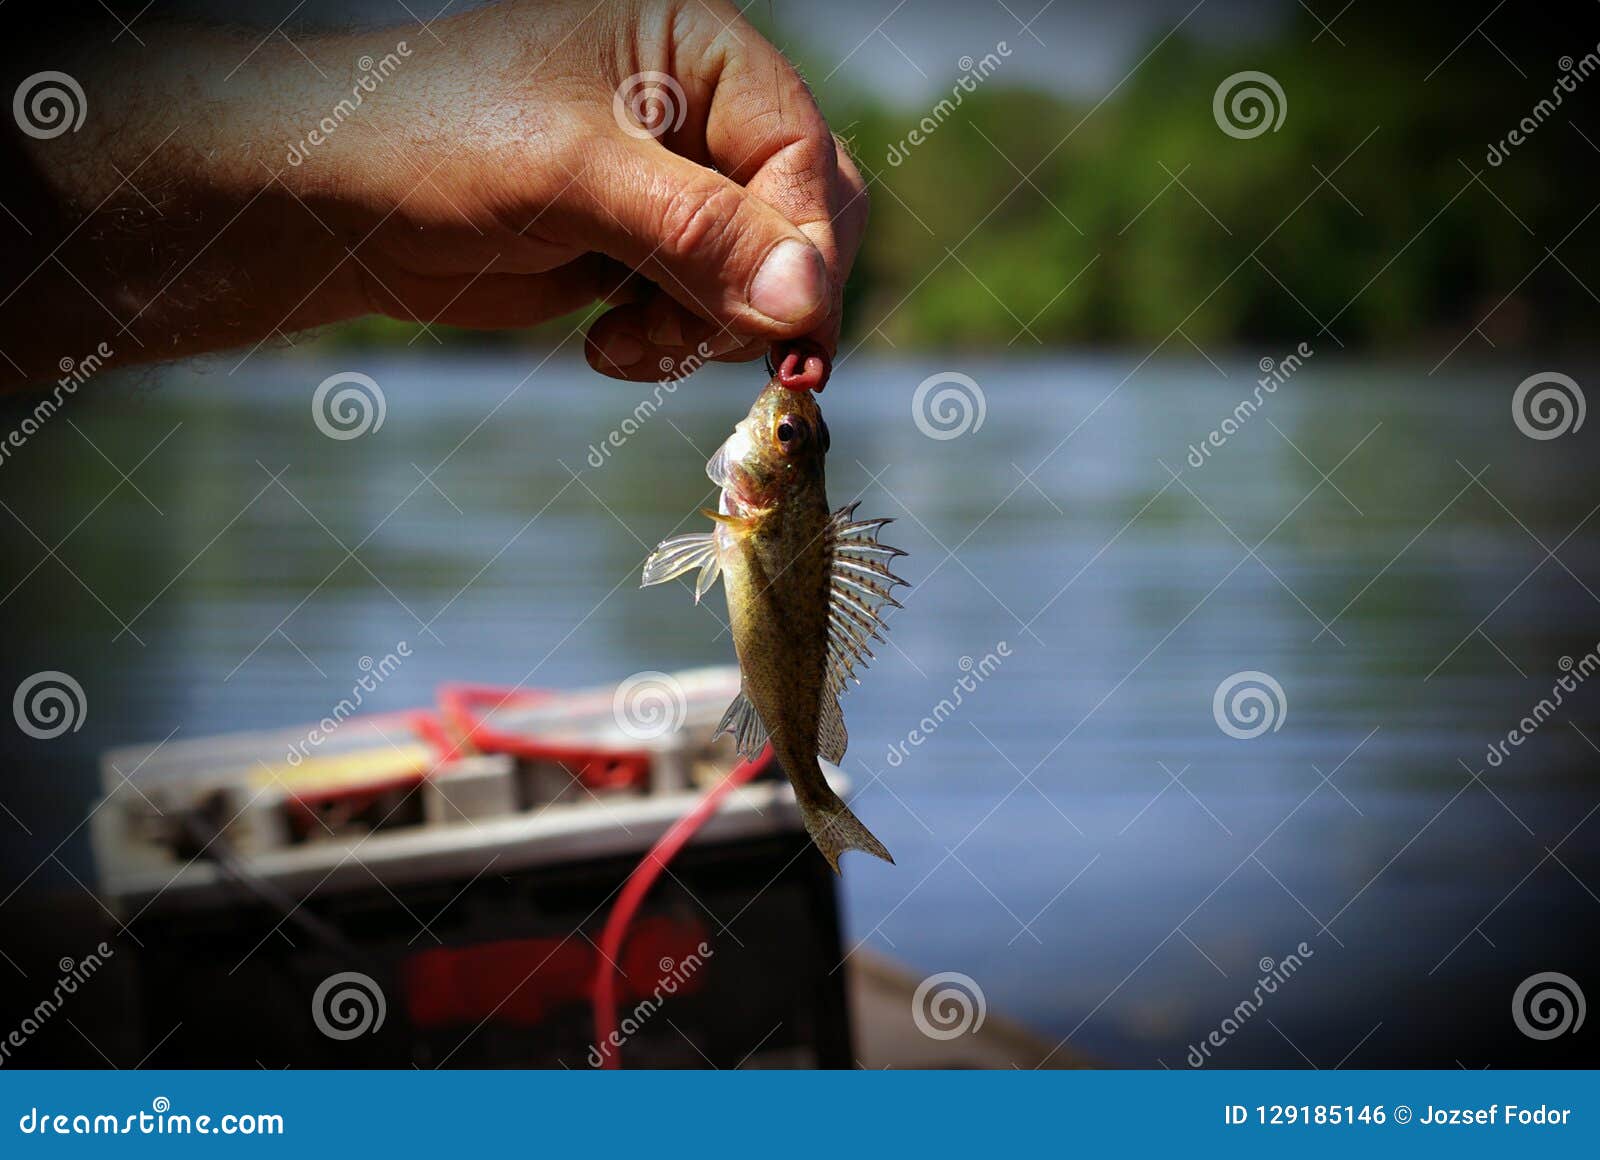 Tiny fish on the hook stock photo. Image of tiny, hook - 129185146